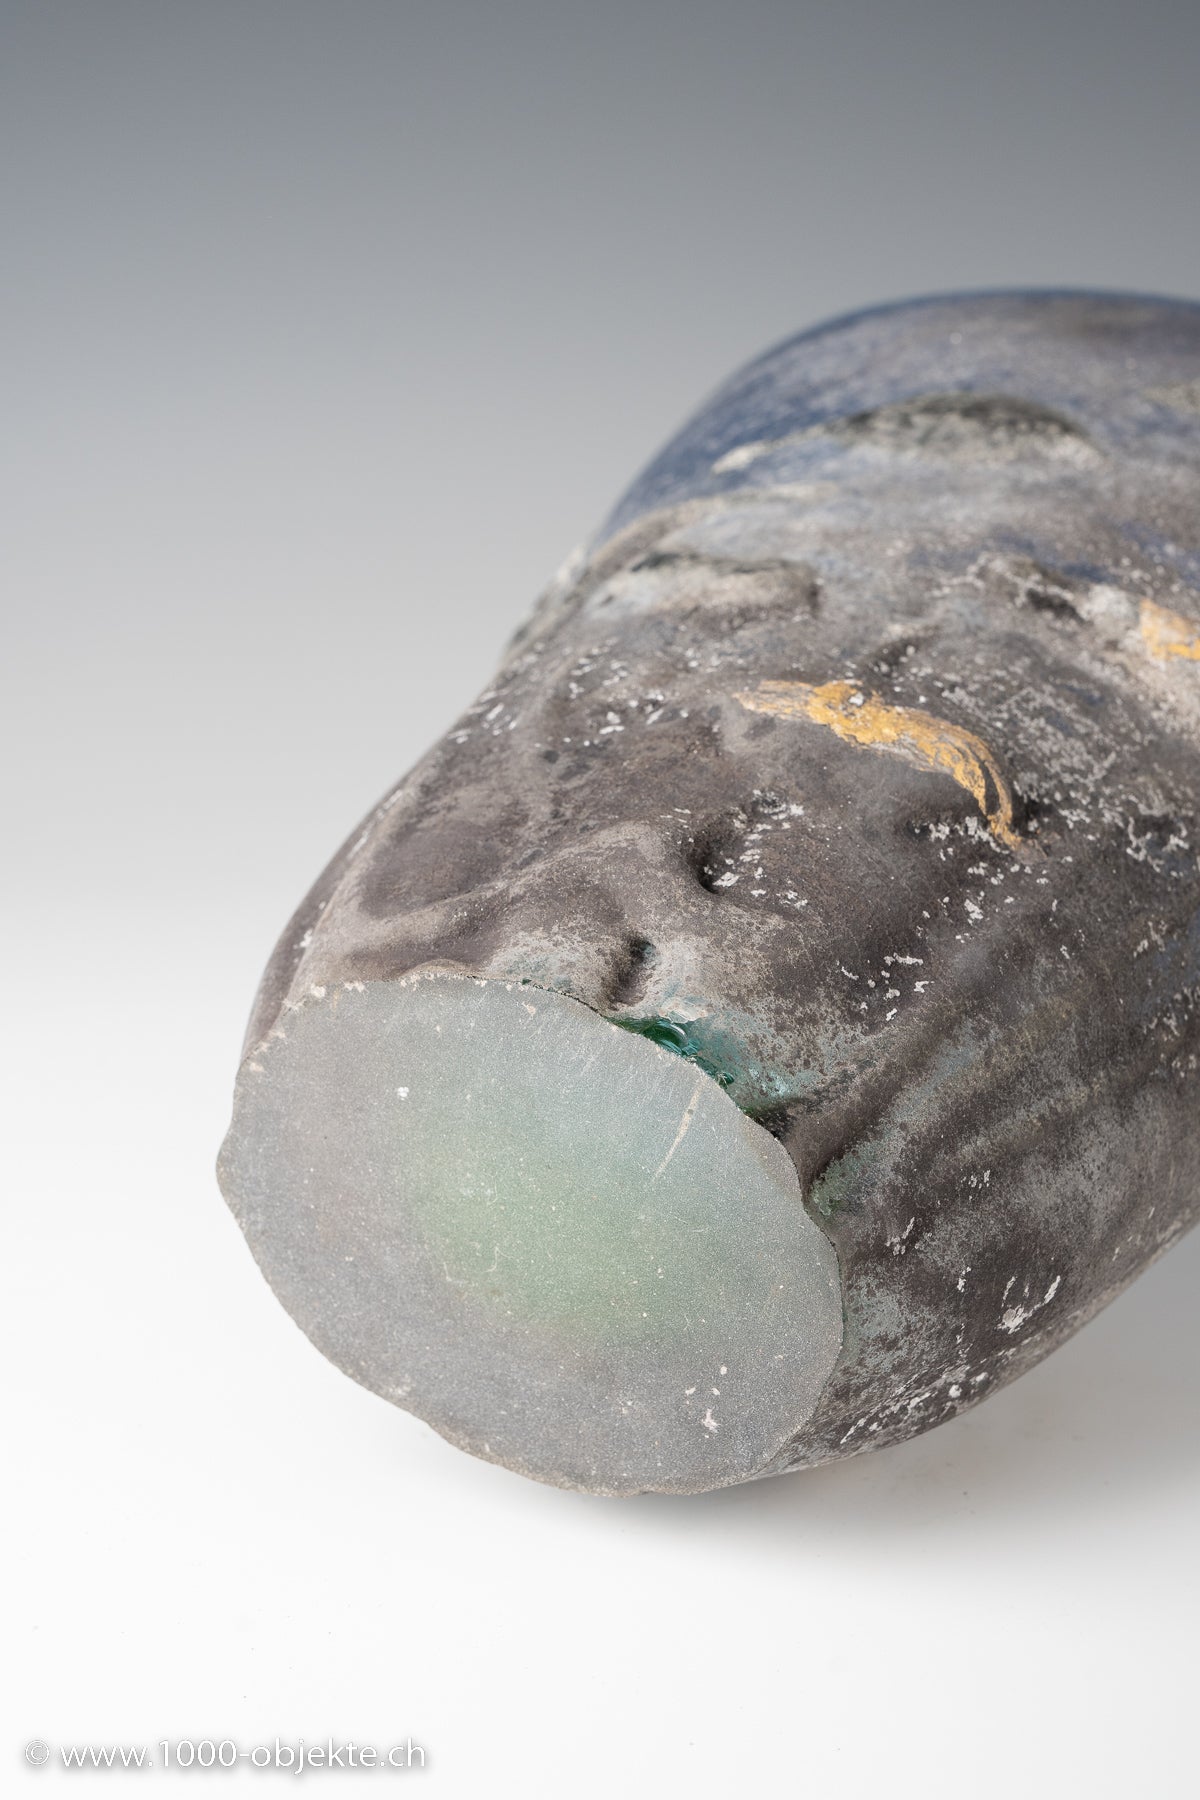 A scavo glass Cenedes Ermanno Nason 1963-72